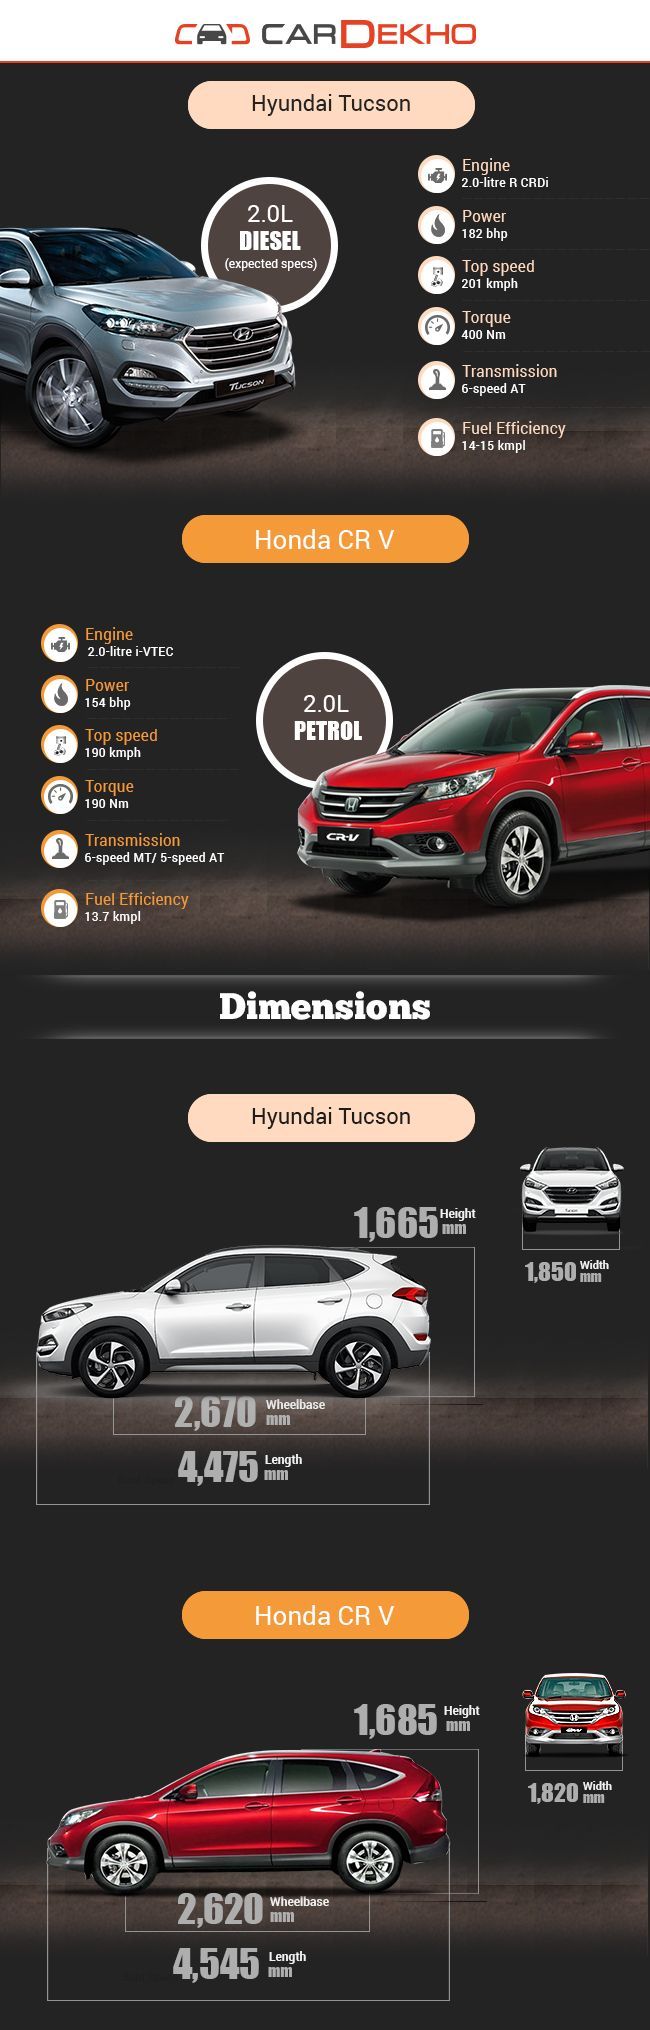 Hyundai Tucson vs Honda CR V